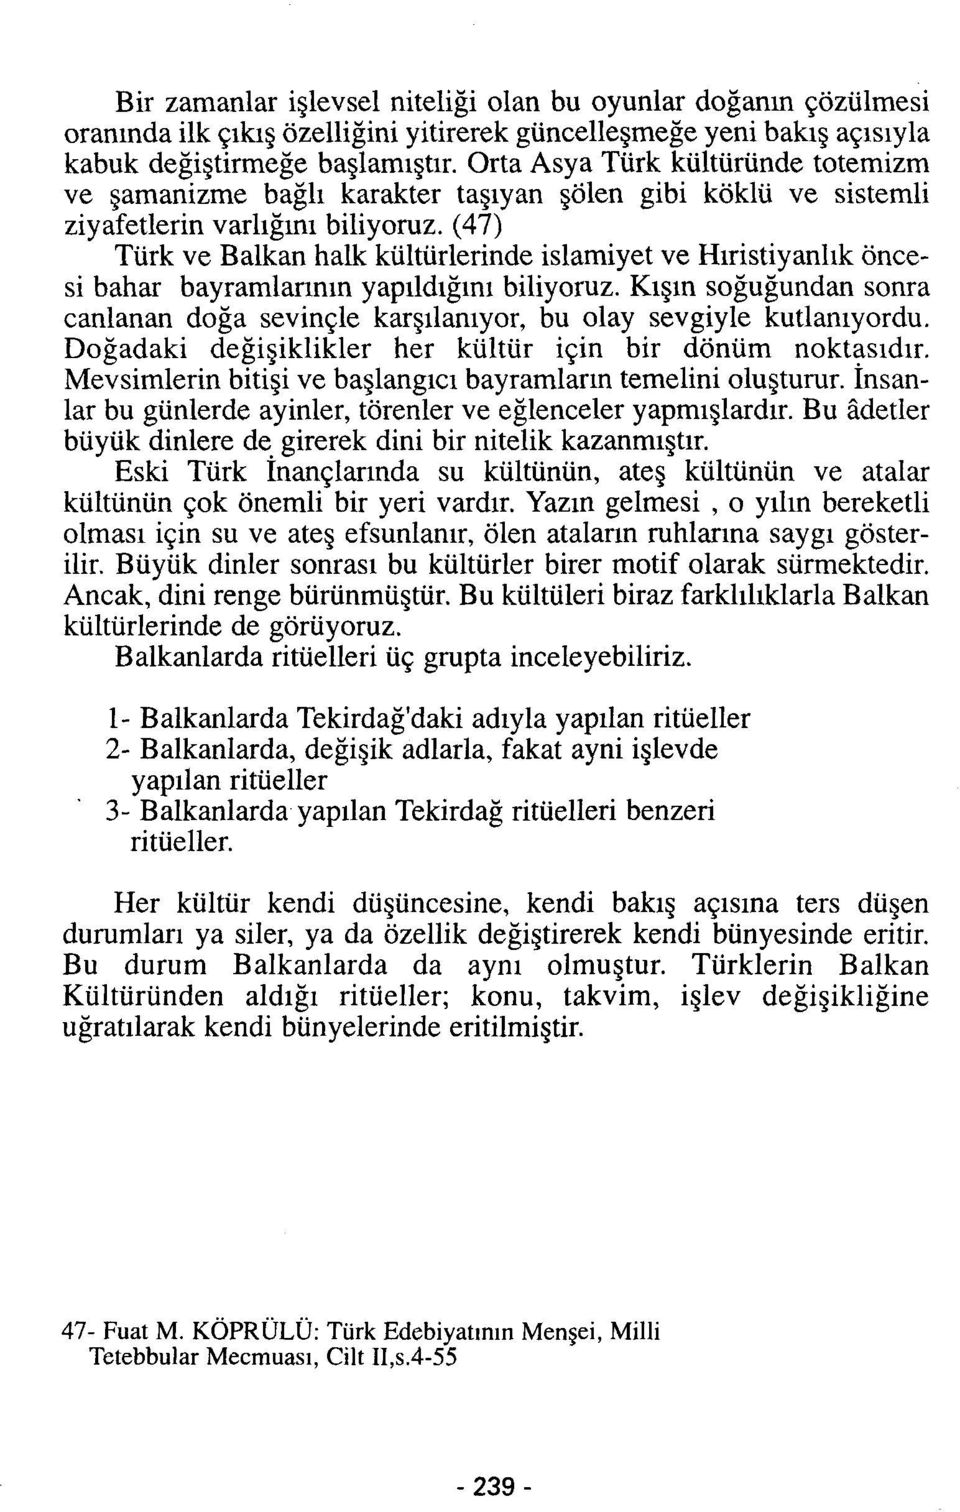 (47) Türk ve Balkan halk kültürlerinde islamiyet ve Hıristiyanlık öncesi bahar bayramlarının yapıldığını biliyoruz.